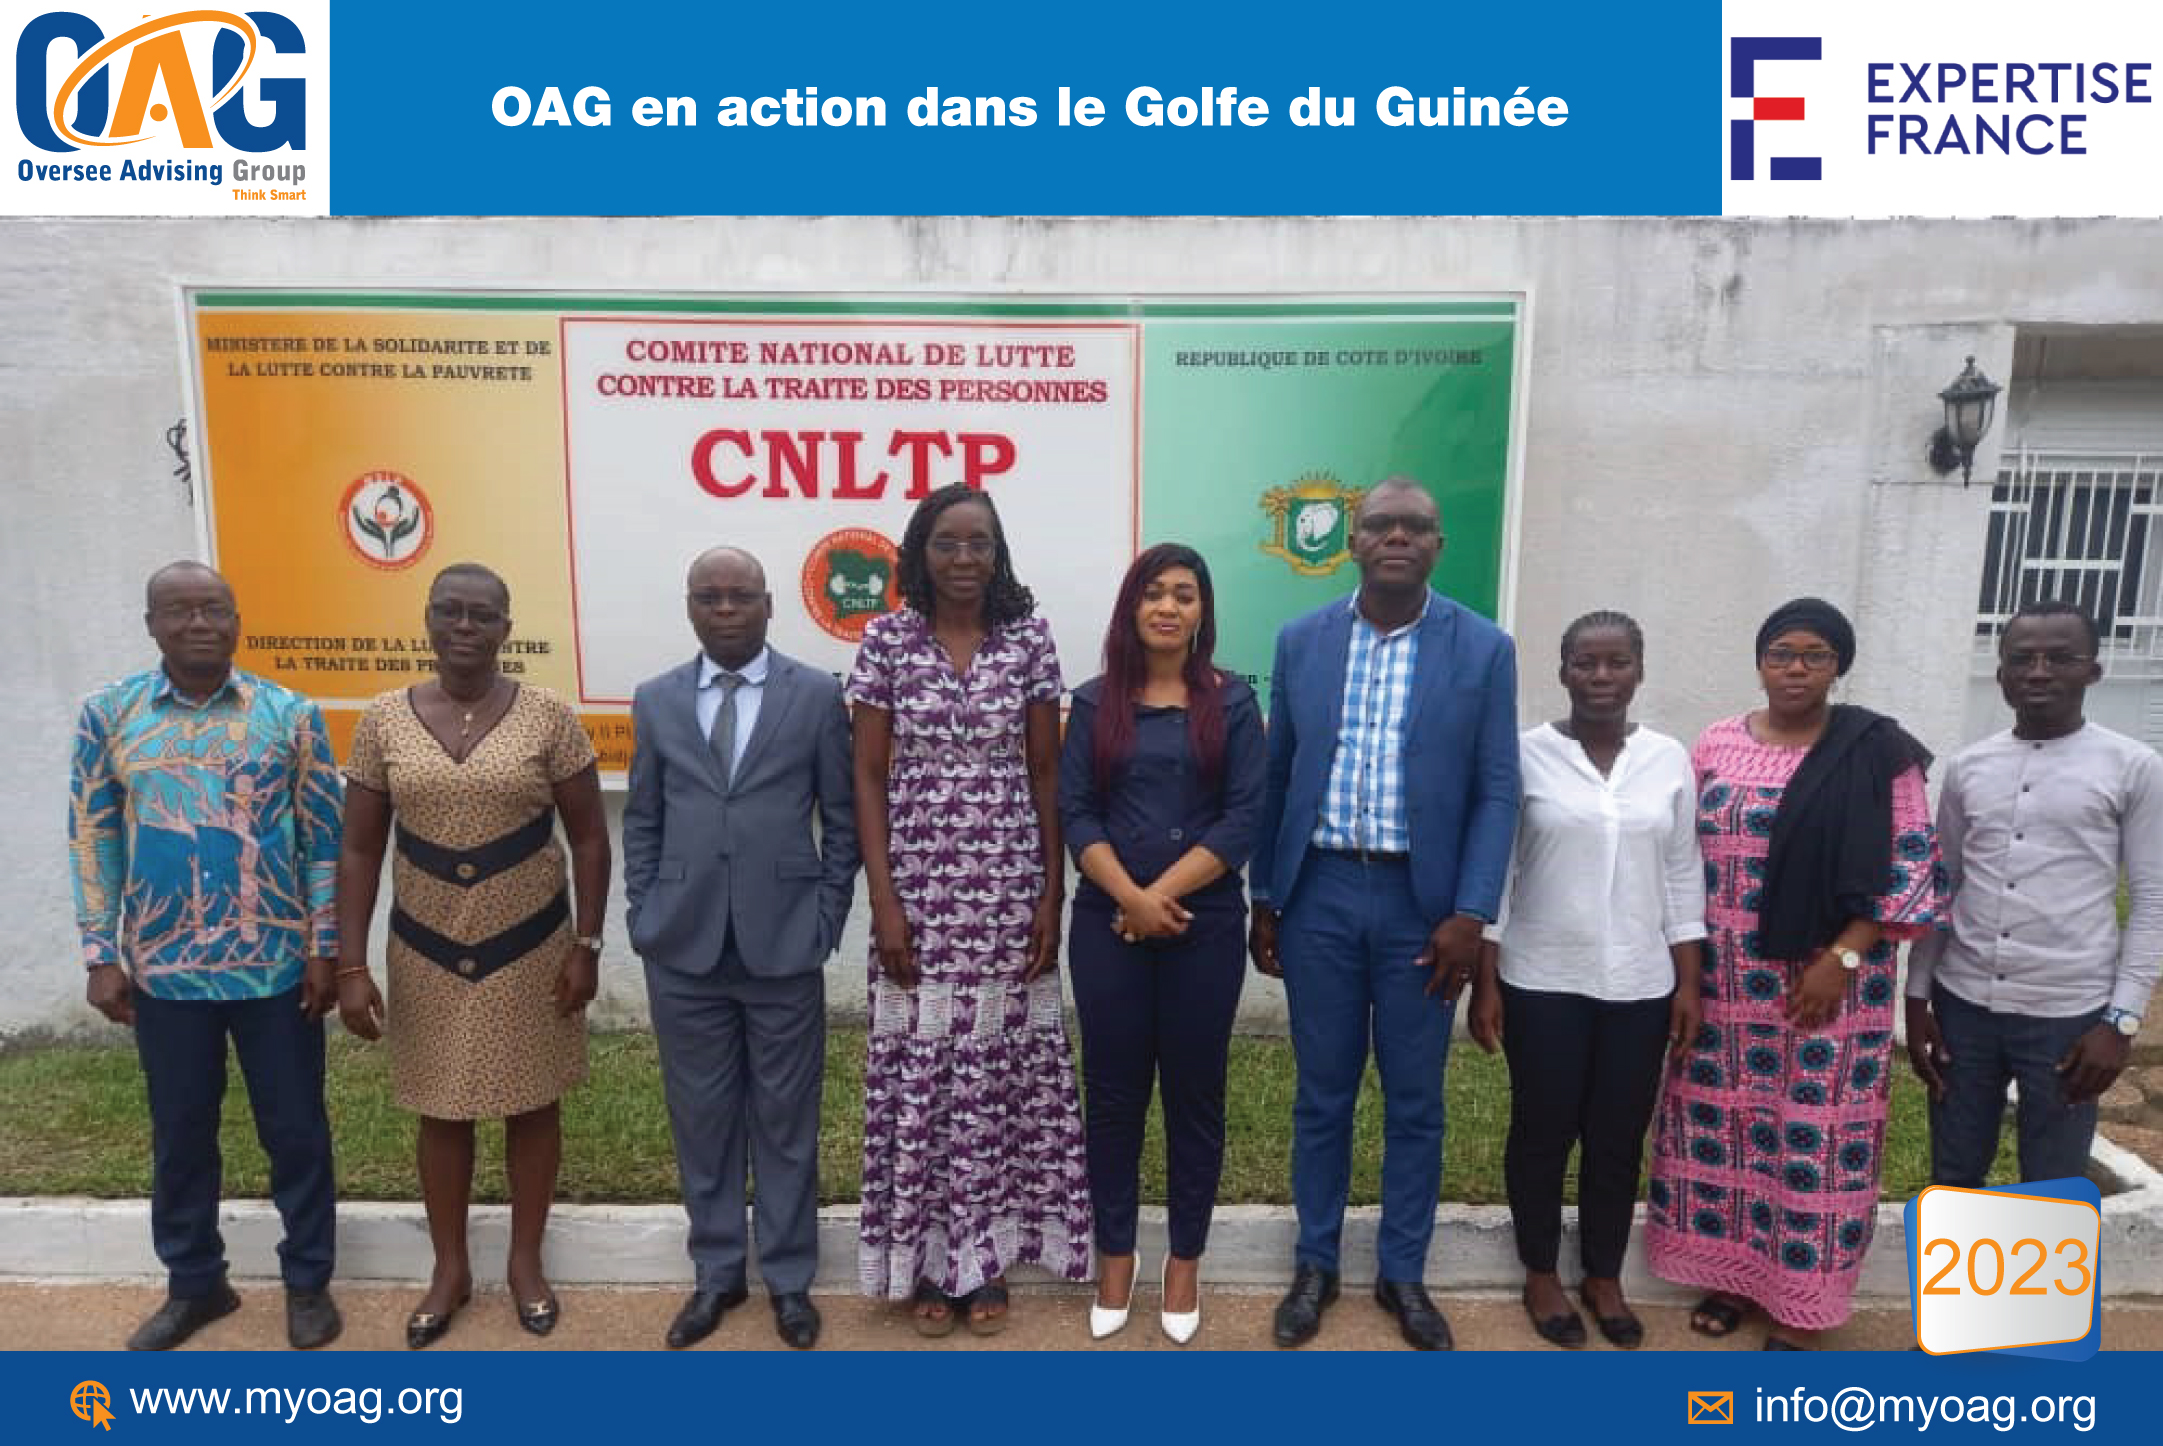 OAG en action dans le Golfe du Guinée